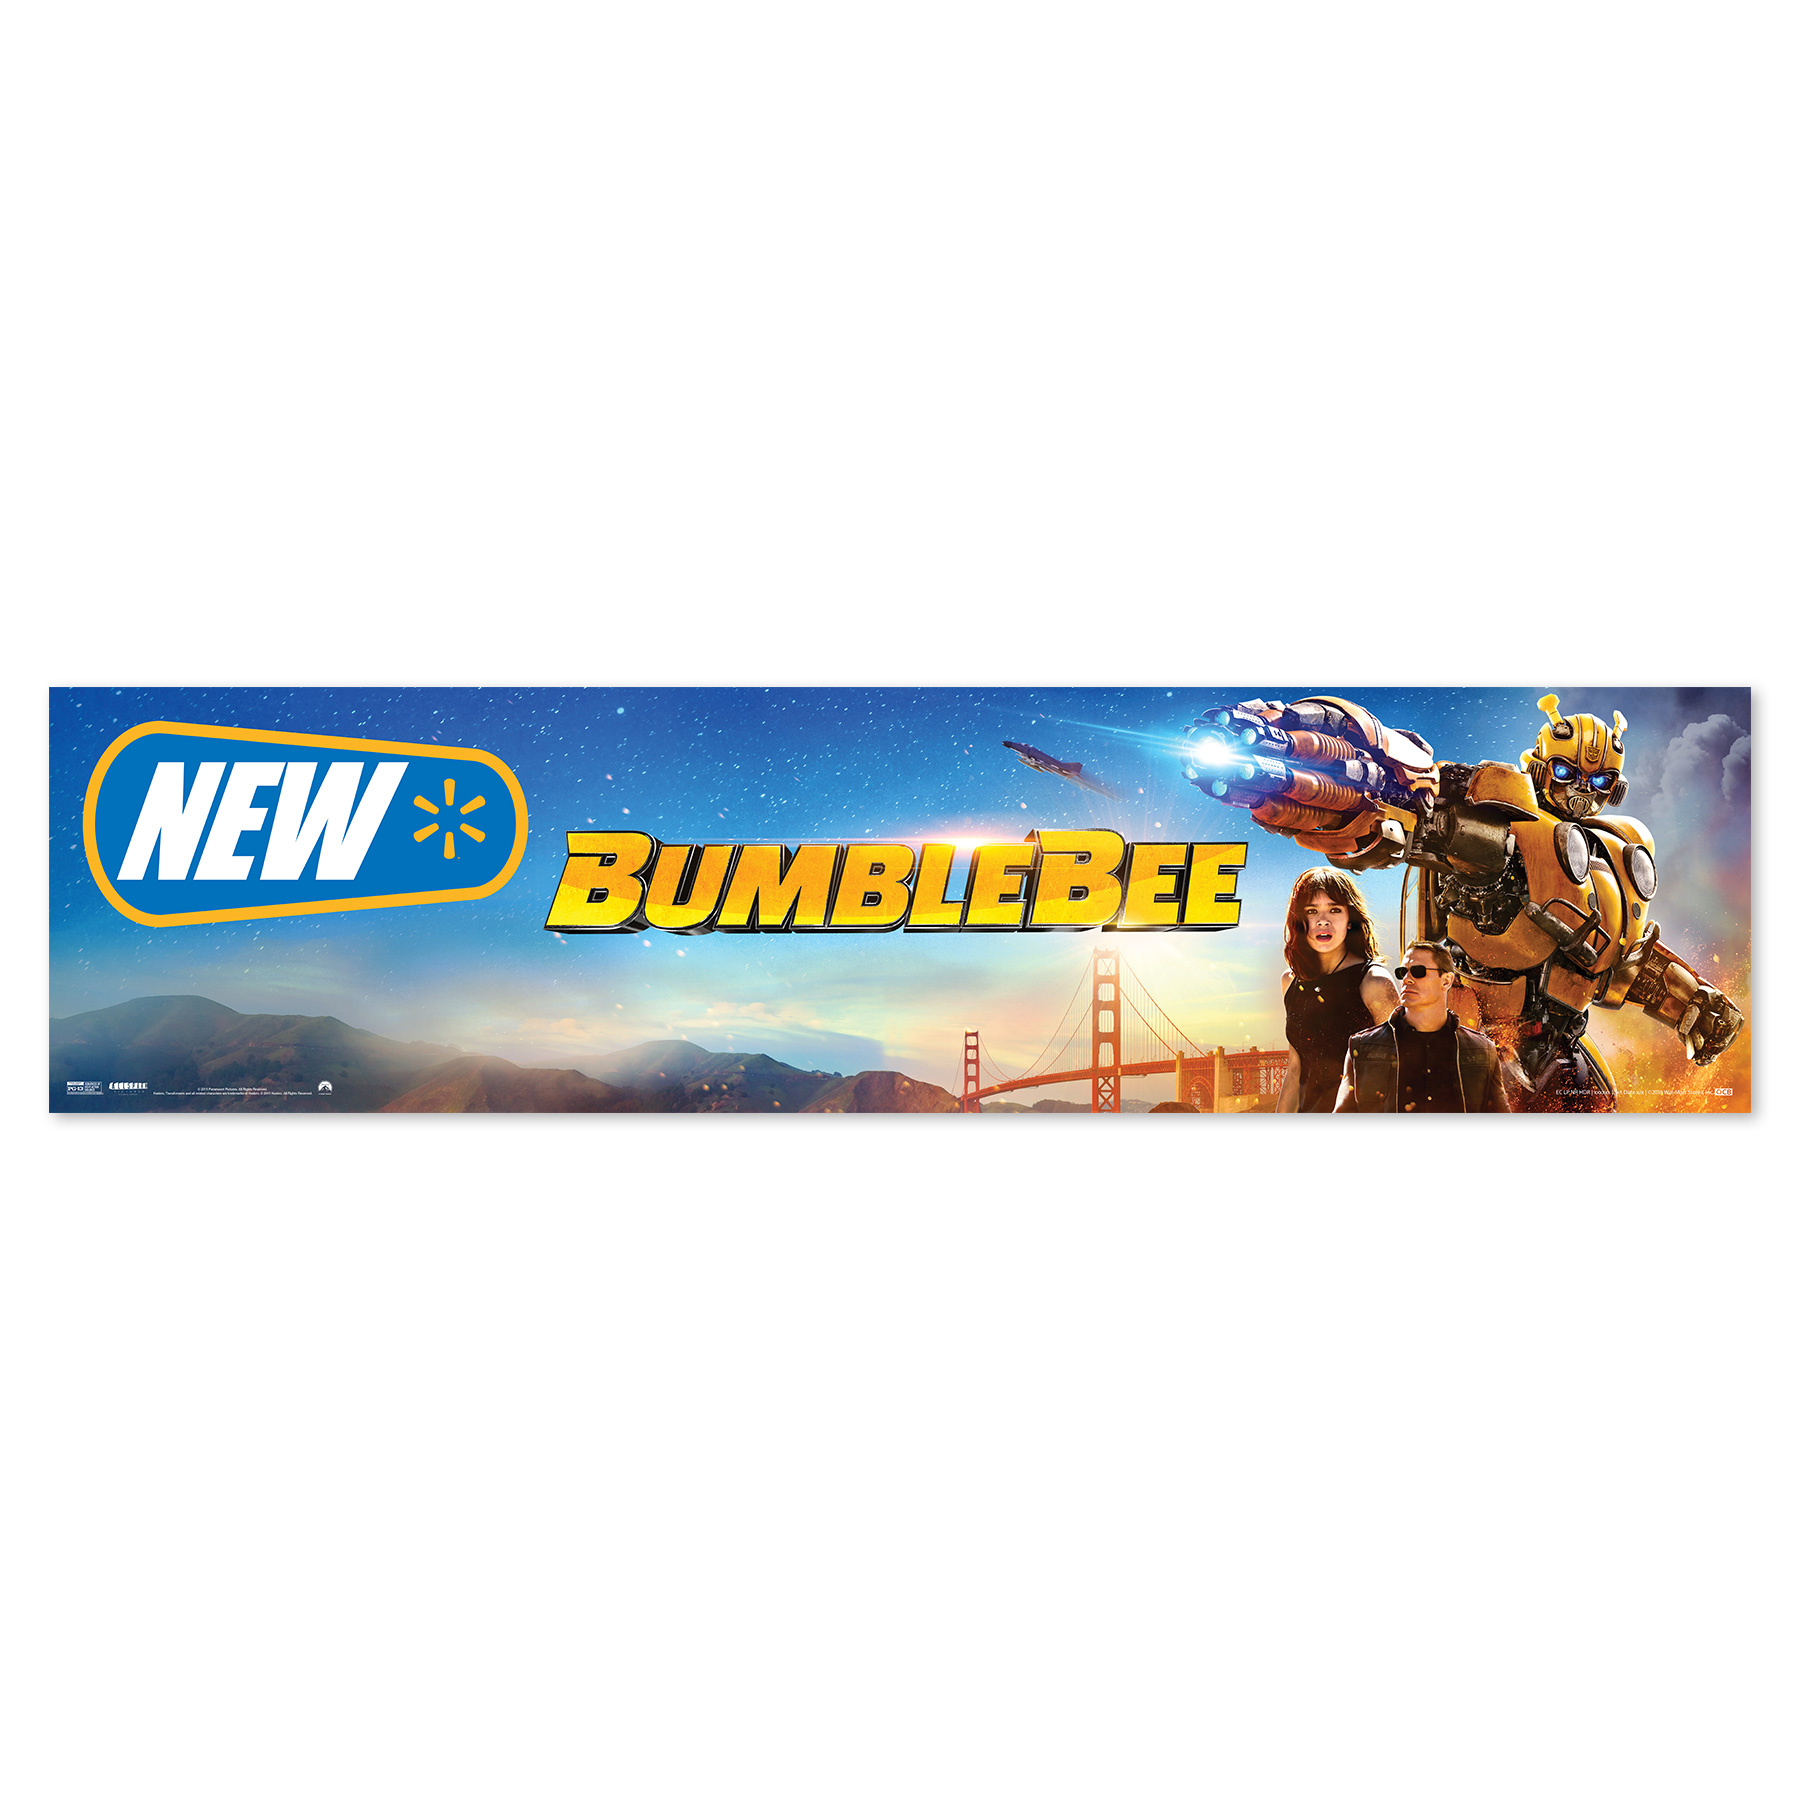 BumbleBee Walmart New Release Header